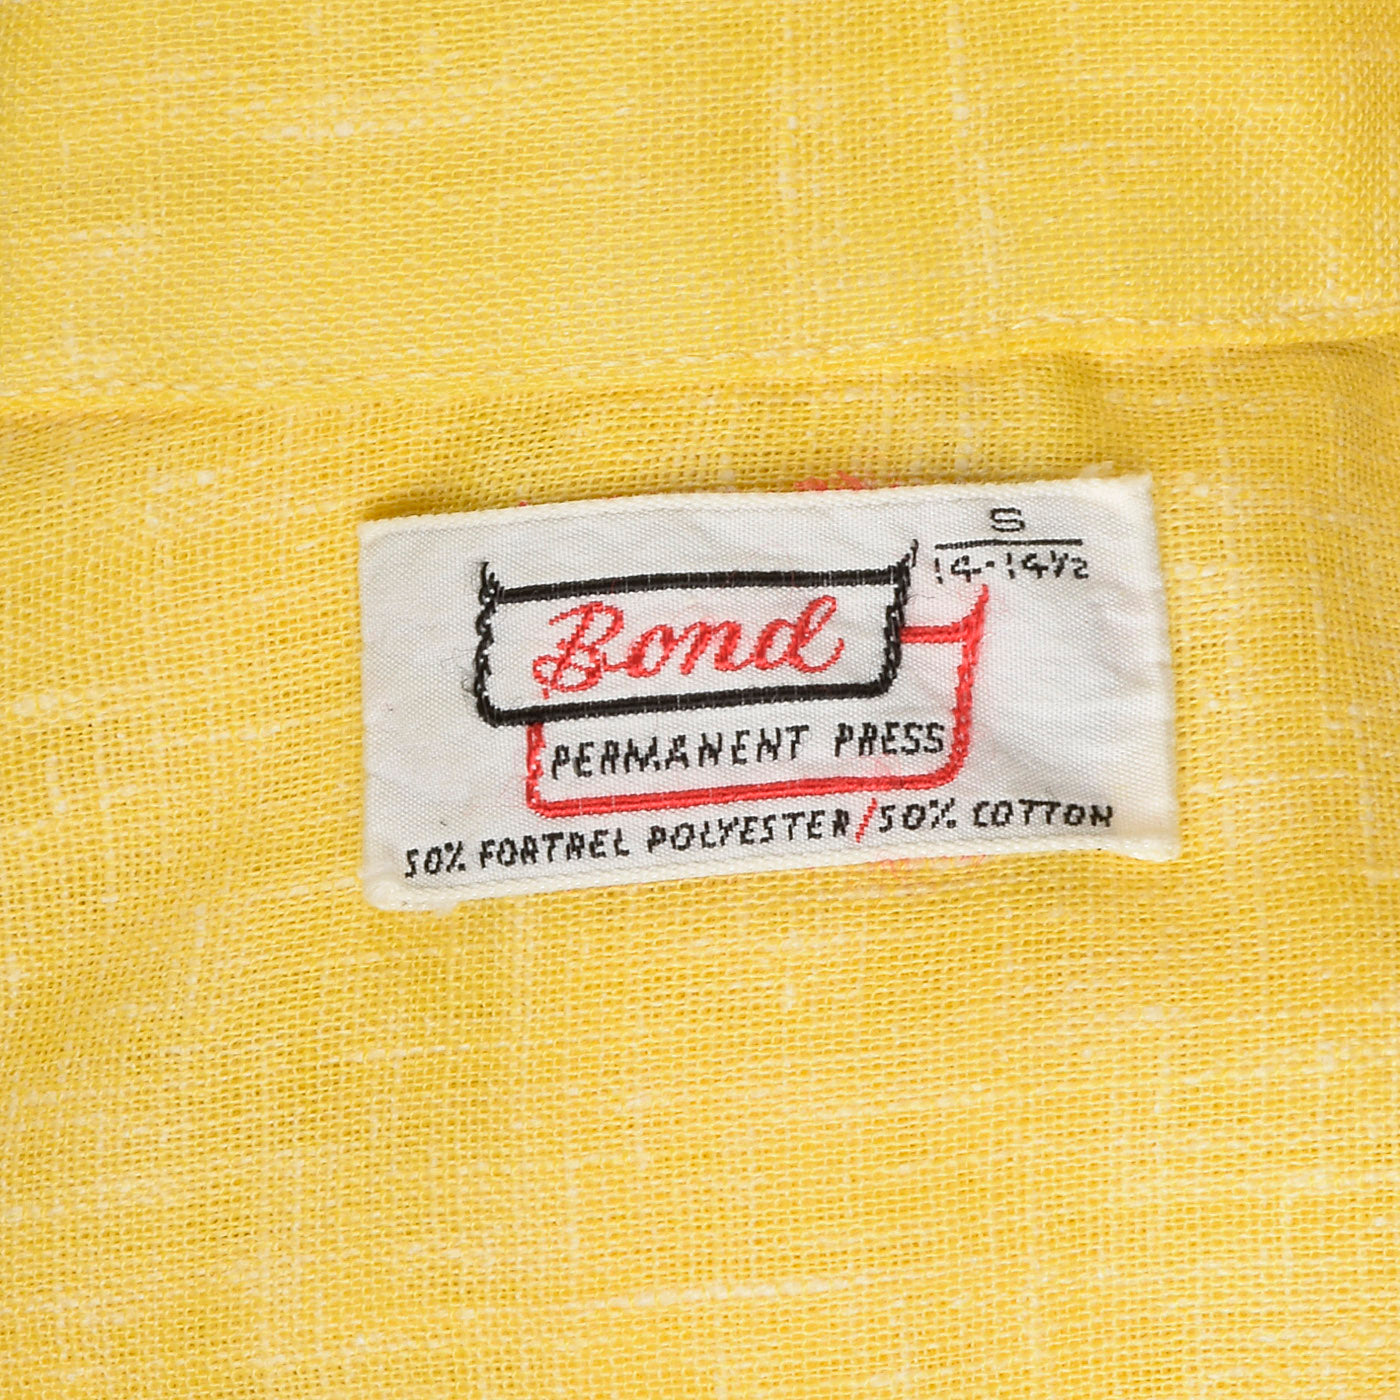 1960s Mens Yellow Semi Sheer Short Sleeve Shirt